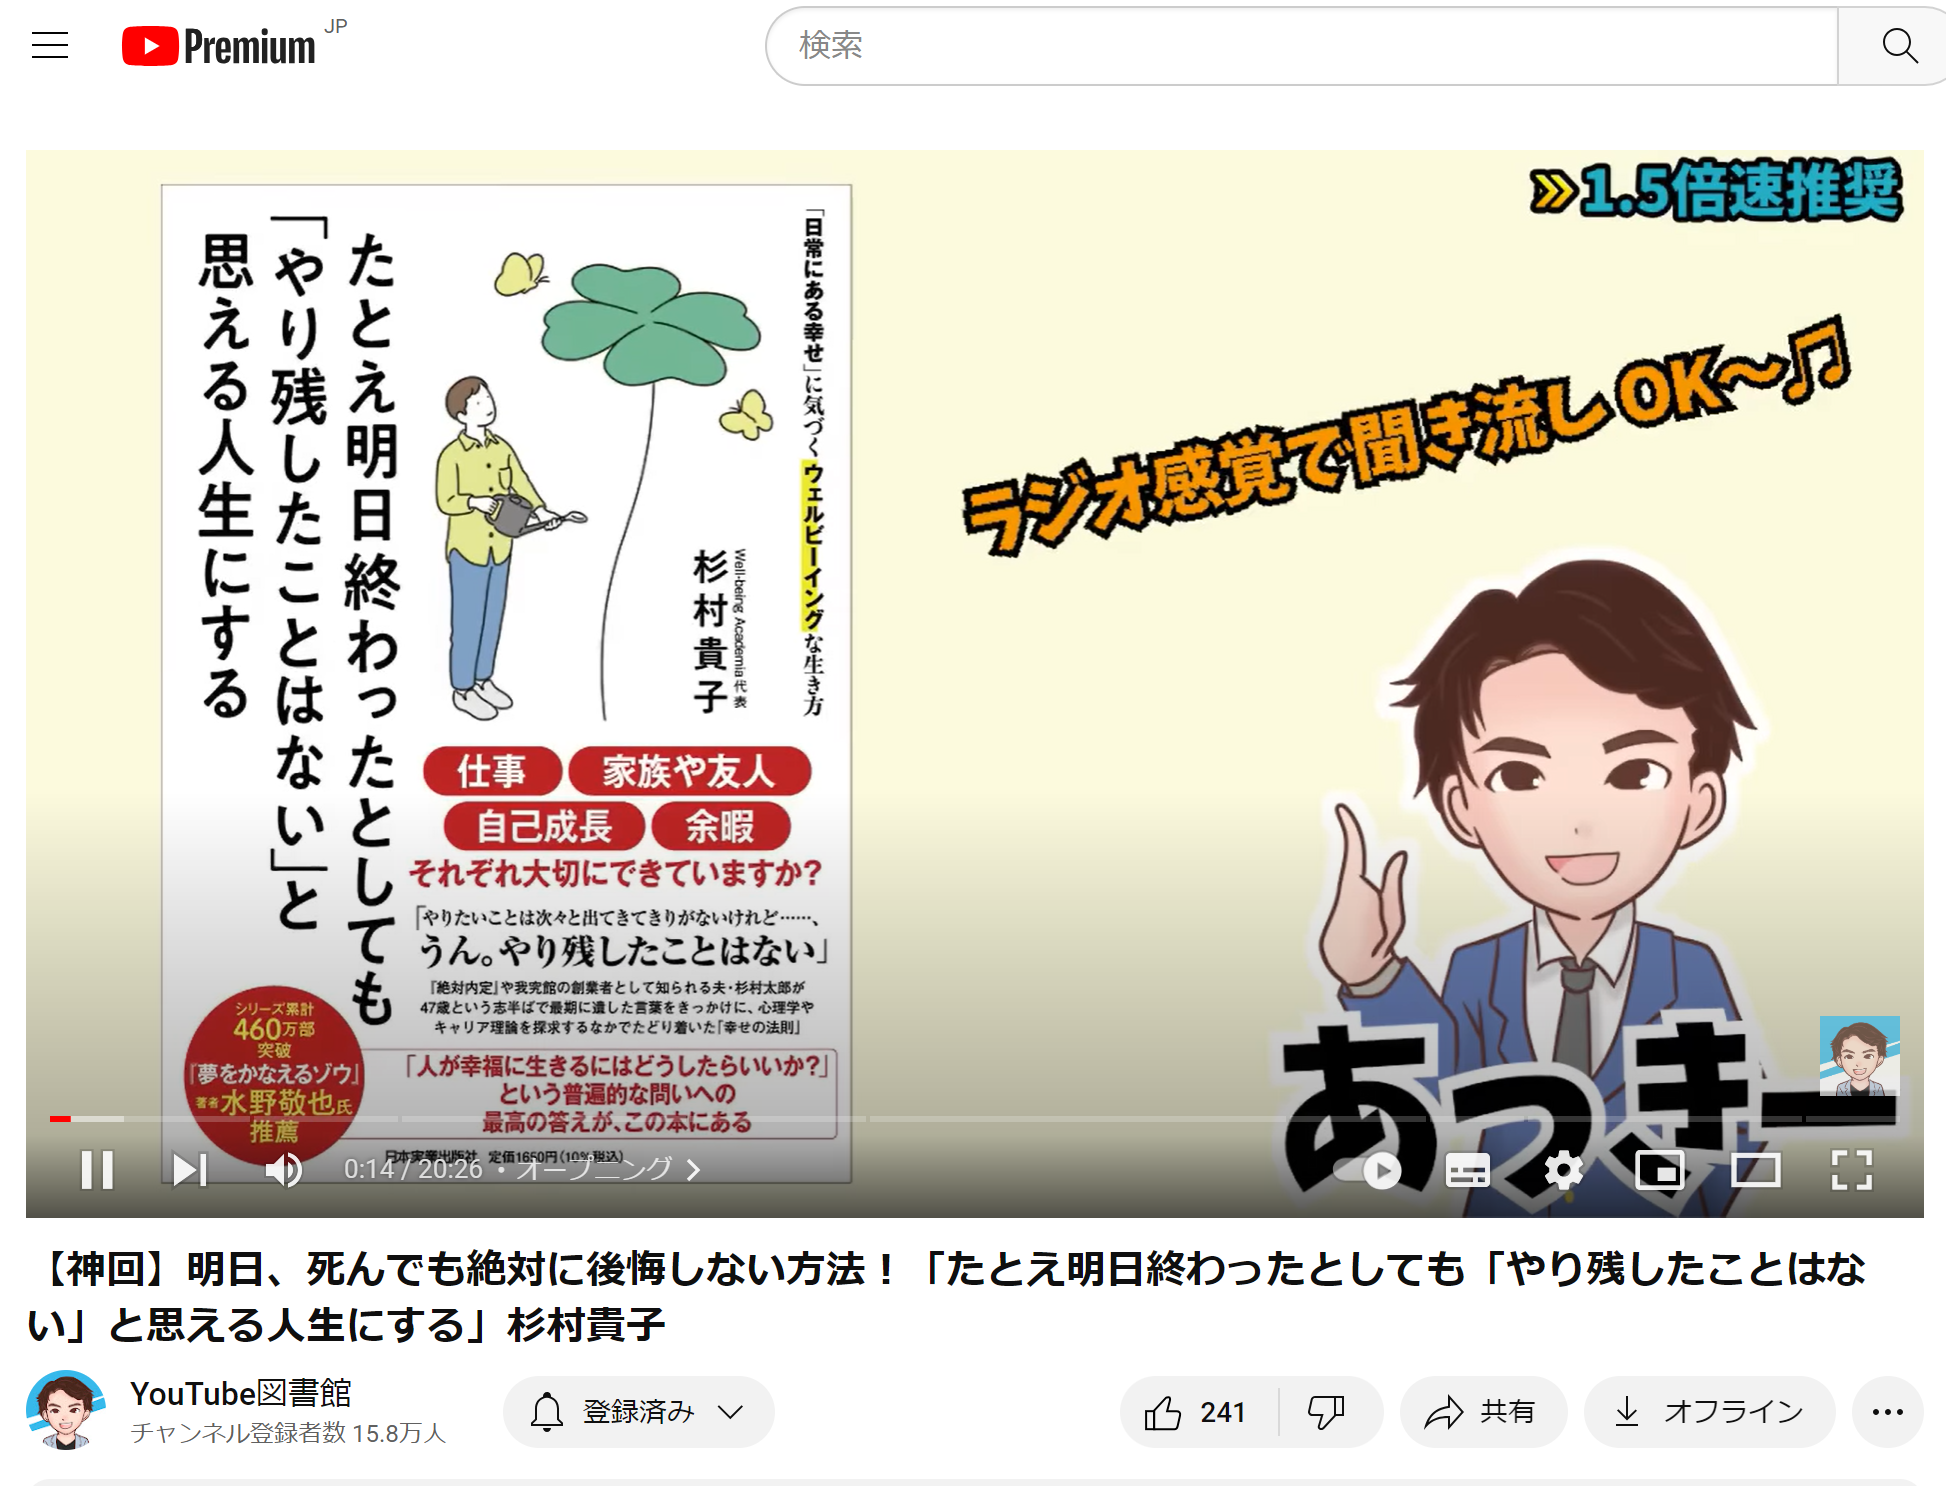 チャンネル登録者数15.8万人！「YouTube図書館」にて杉村貴子著『たとえ明日終わったとしても「やり残したことはない」と思える人生にする』を特集いただきました！